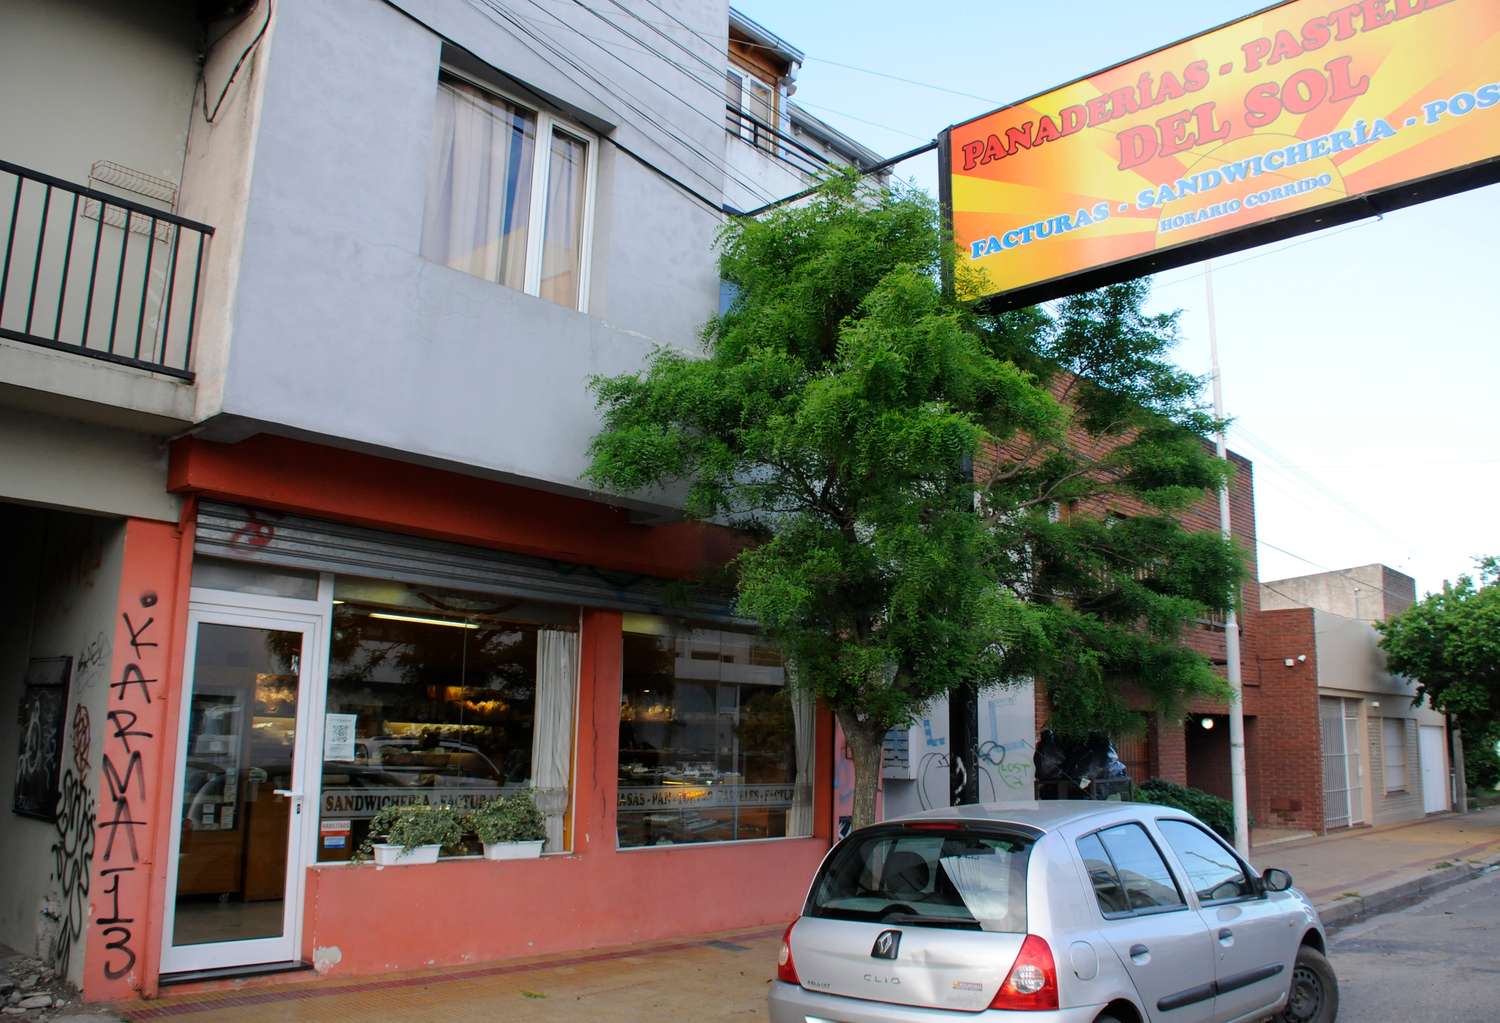 La sucursal de Panadería del Sol ubicada  en Pinto al 1300 sufrió un nuevo asalto